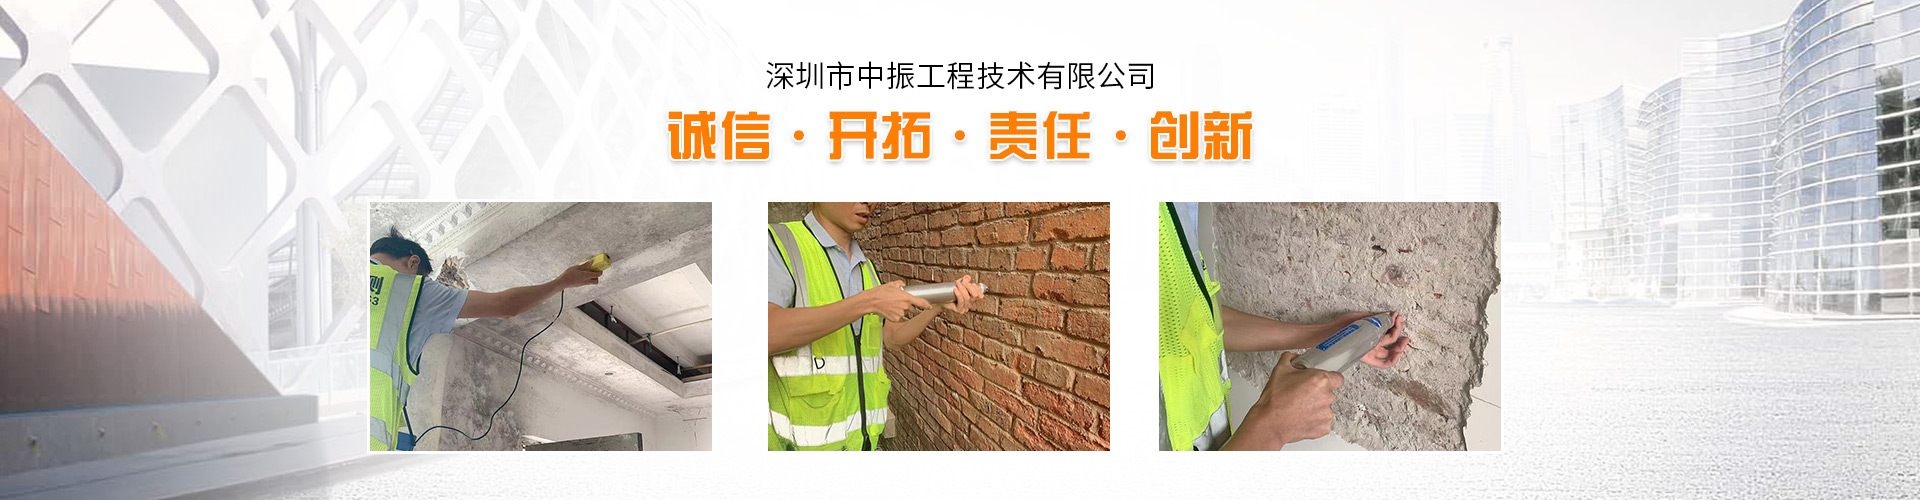 禅城区铁皮厂房钢结构检测鉴房--屋安全检测鉴定机构